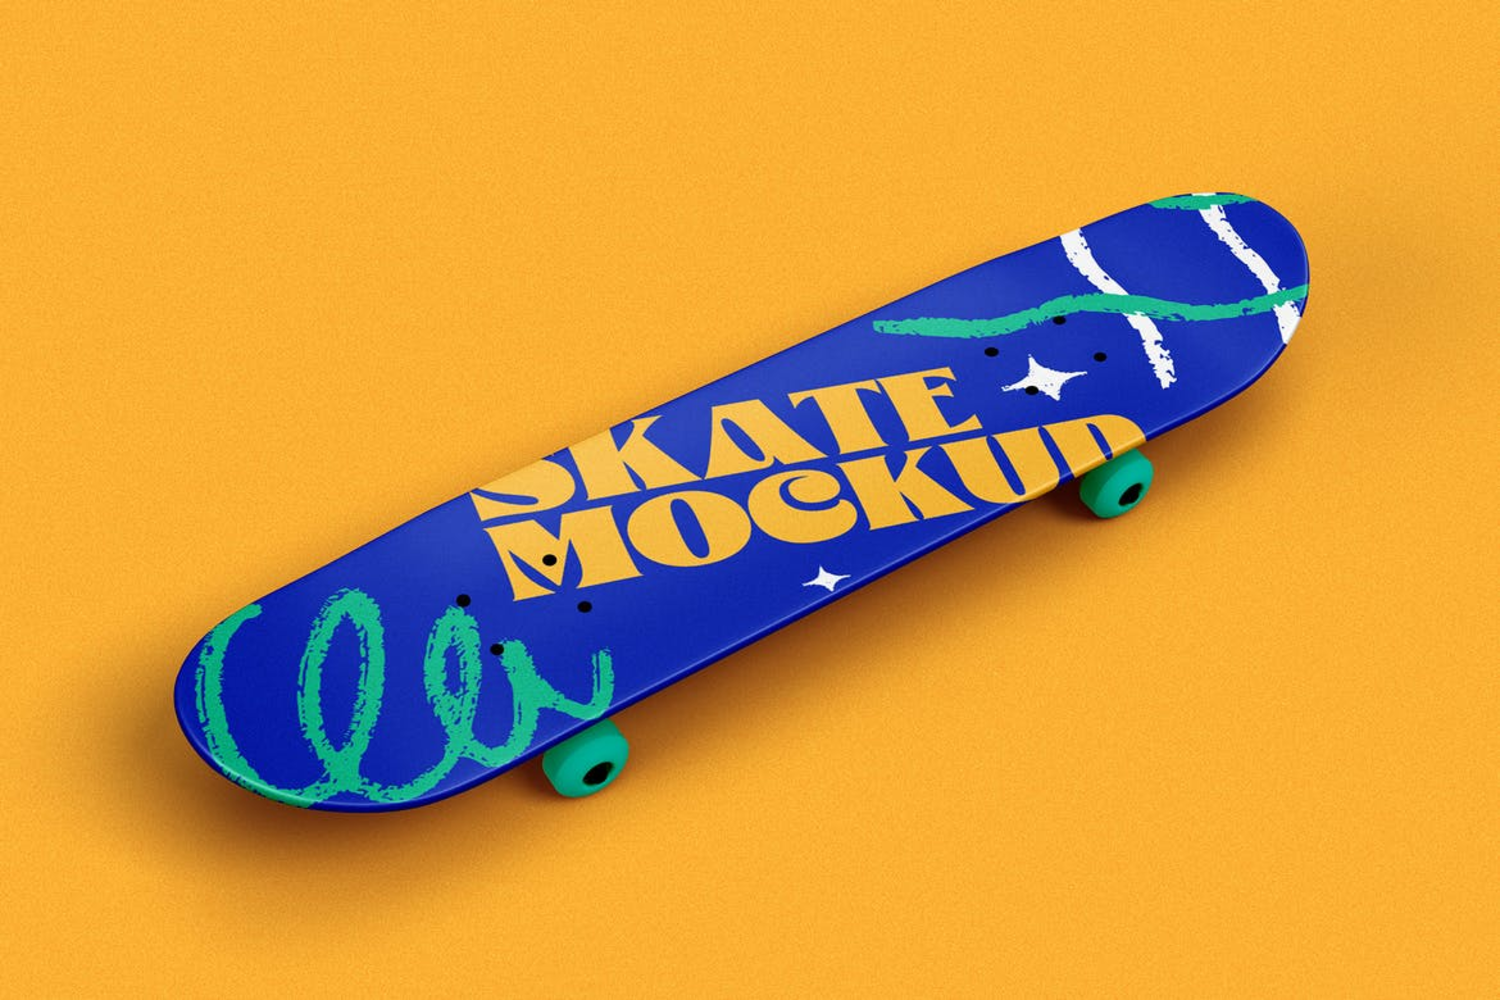 1791 8款潮流街头滑板设计PS样机素材(psd) Skateboard Mockup